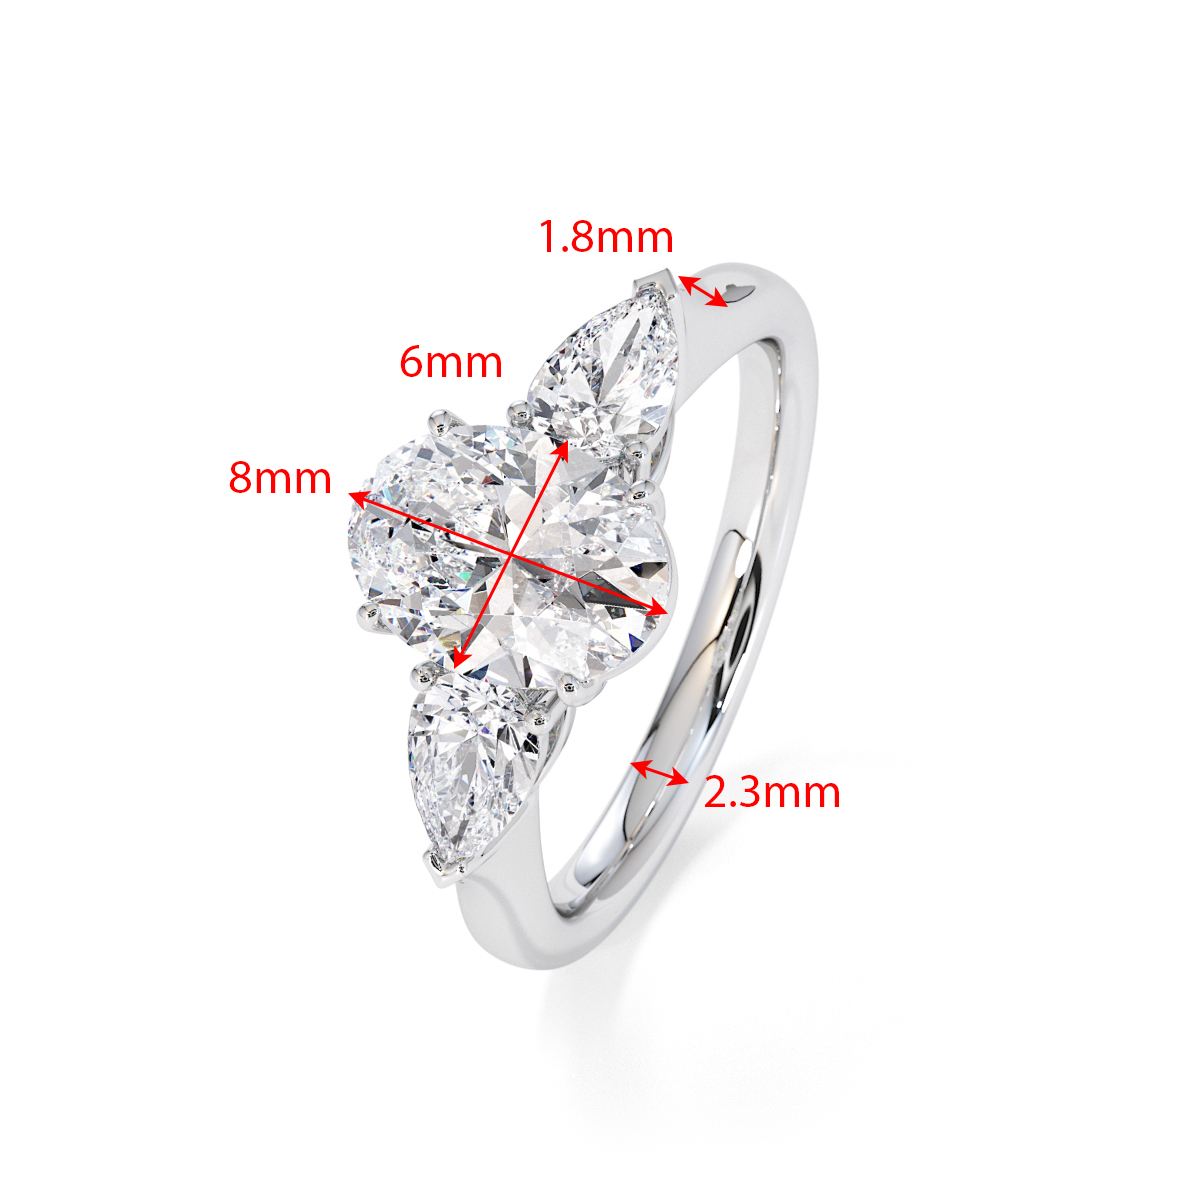 Gold / Platinum Tanzanite and Diamond Engagement Ring RZ3435